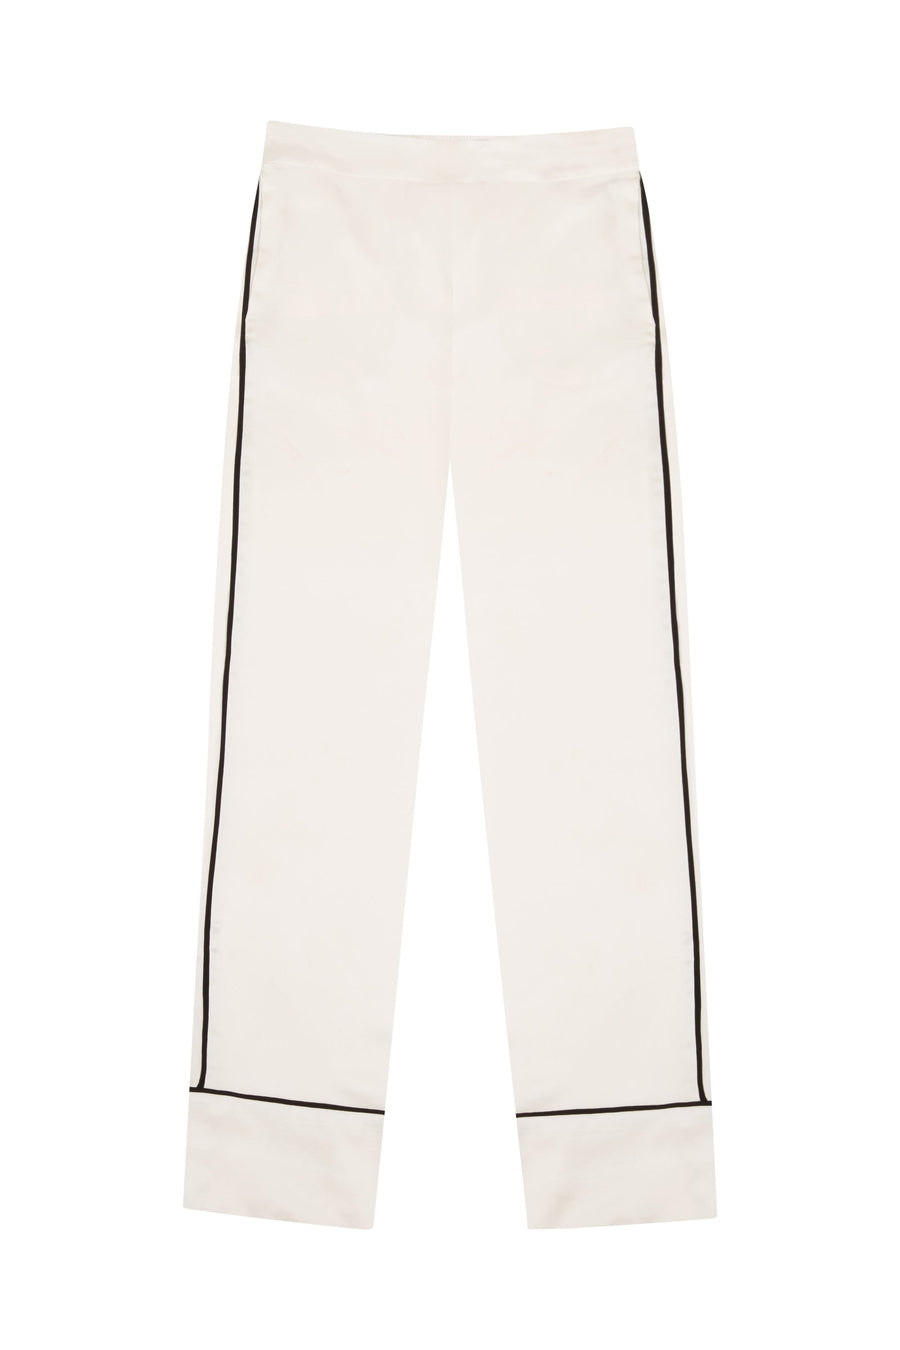 Classic White Silk Pyjama Set - sample sale